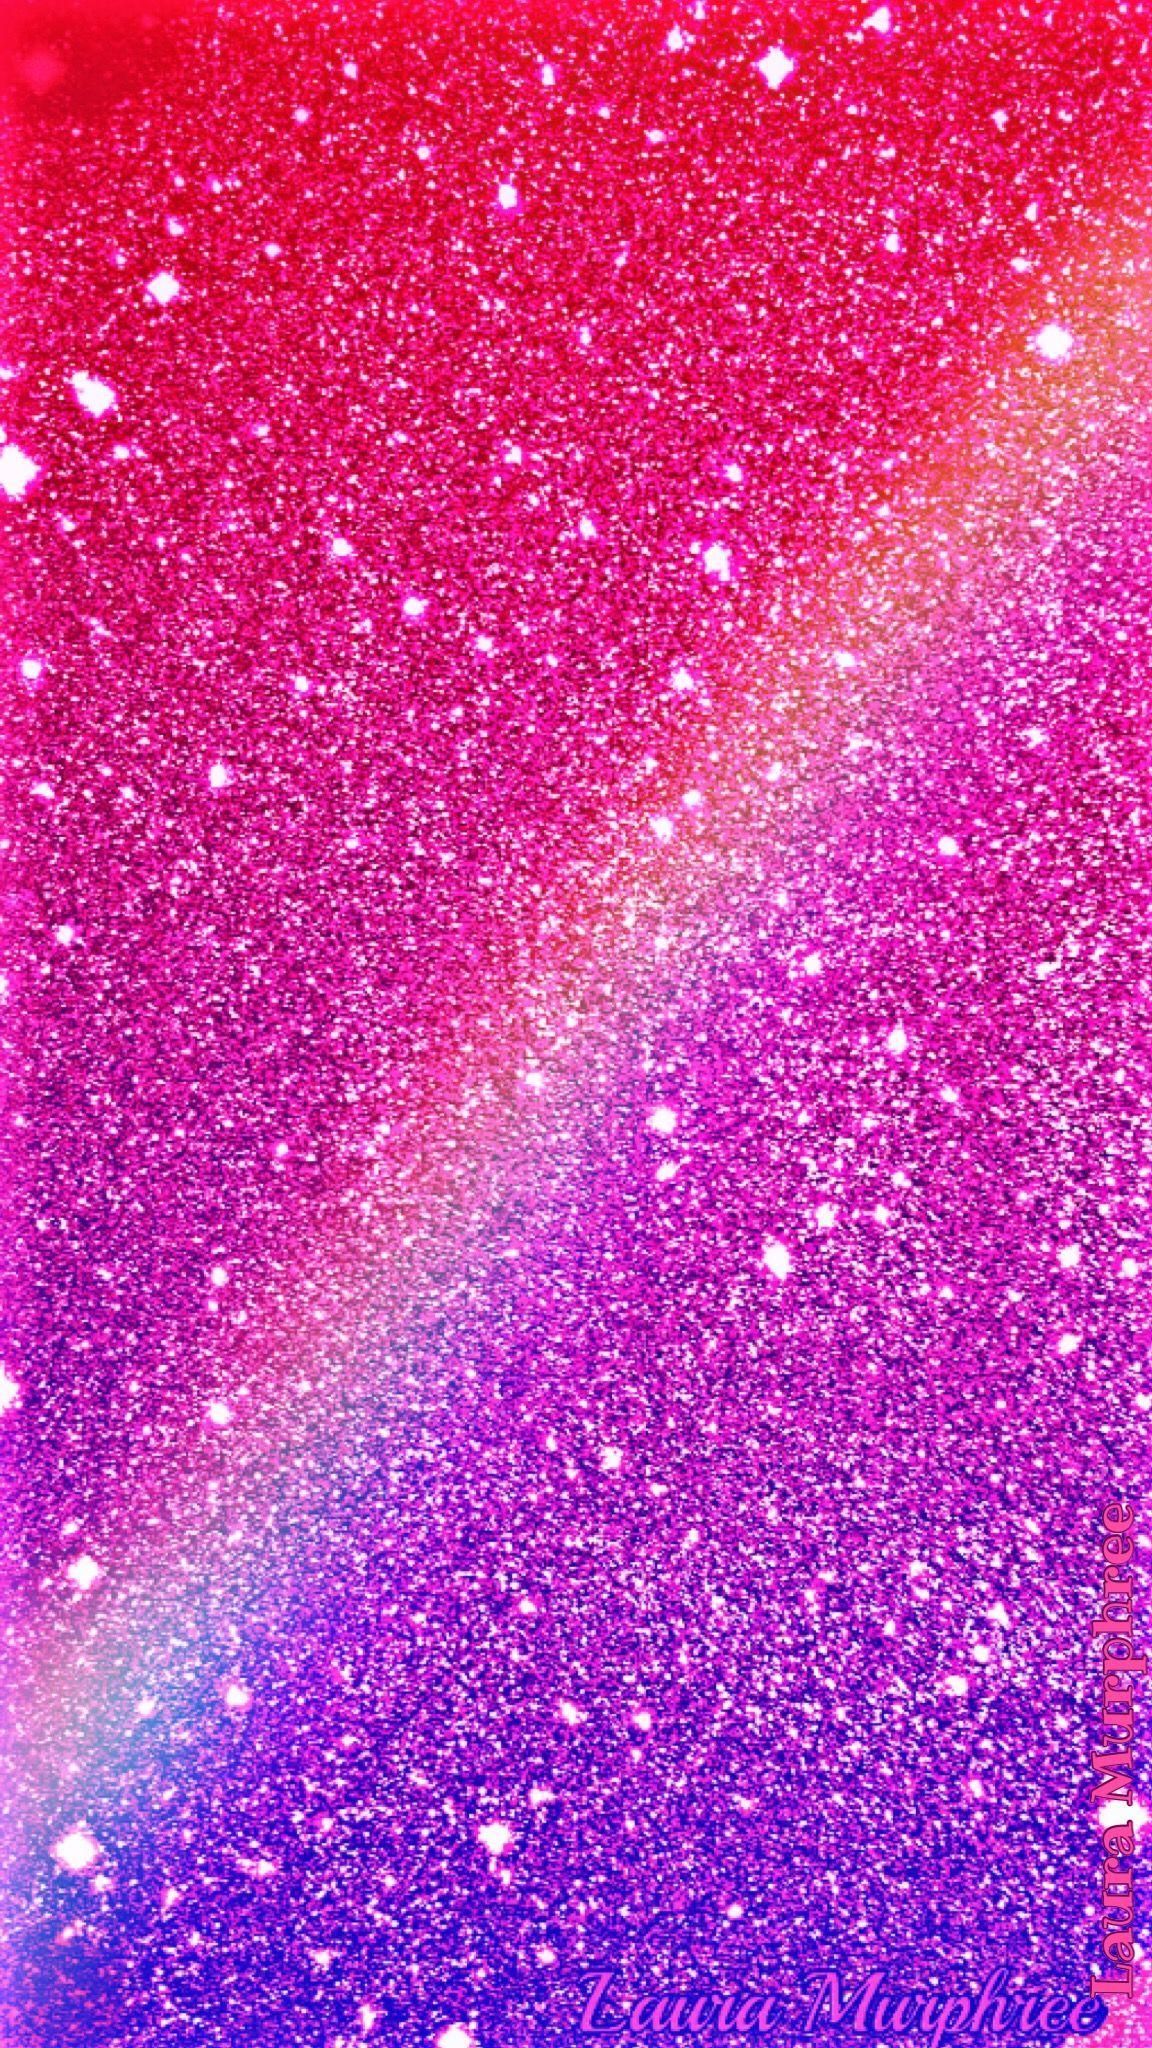 Glitter Rainbow iPhone Wallpaper. ipcwallpaper. Glitter phone wallpaper, iPhone wallpaper glitter, Pink glitter wallpaper